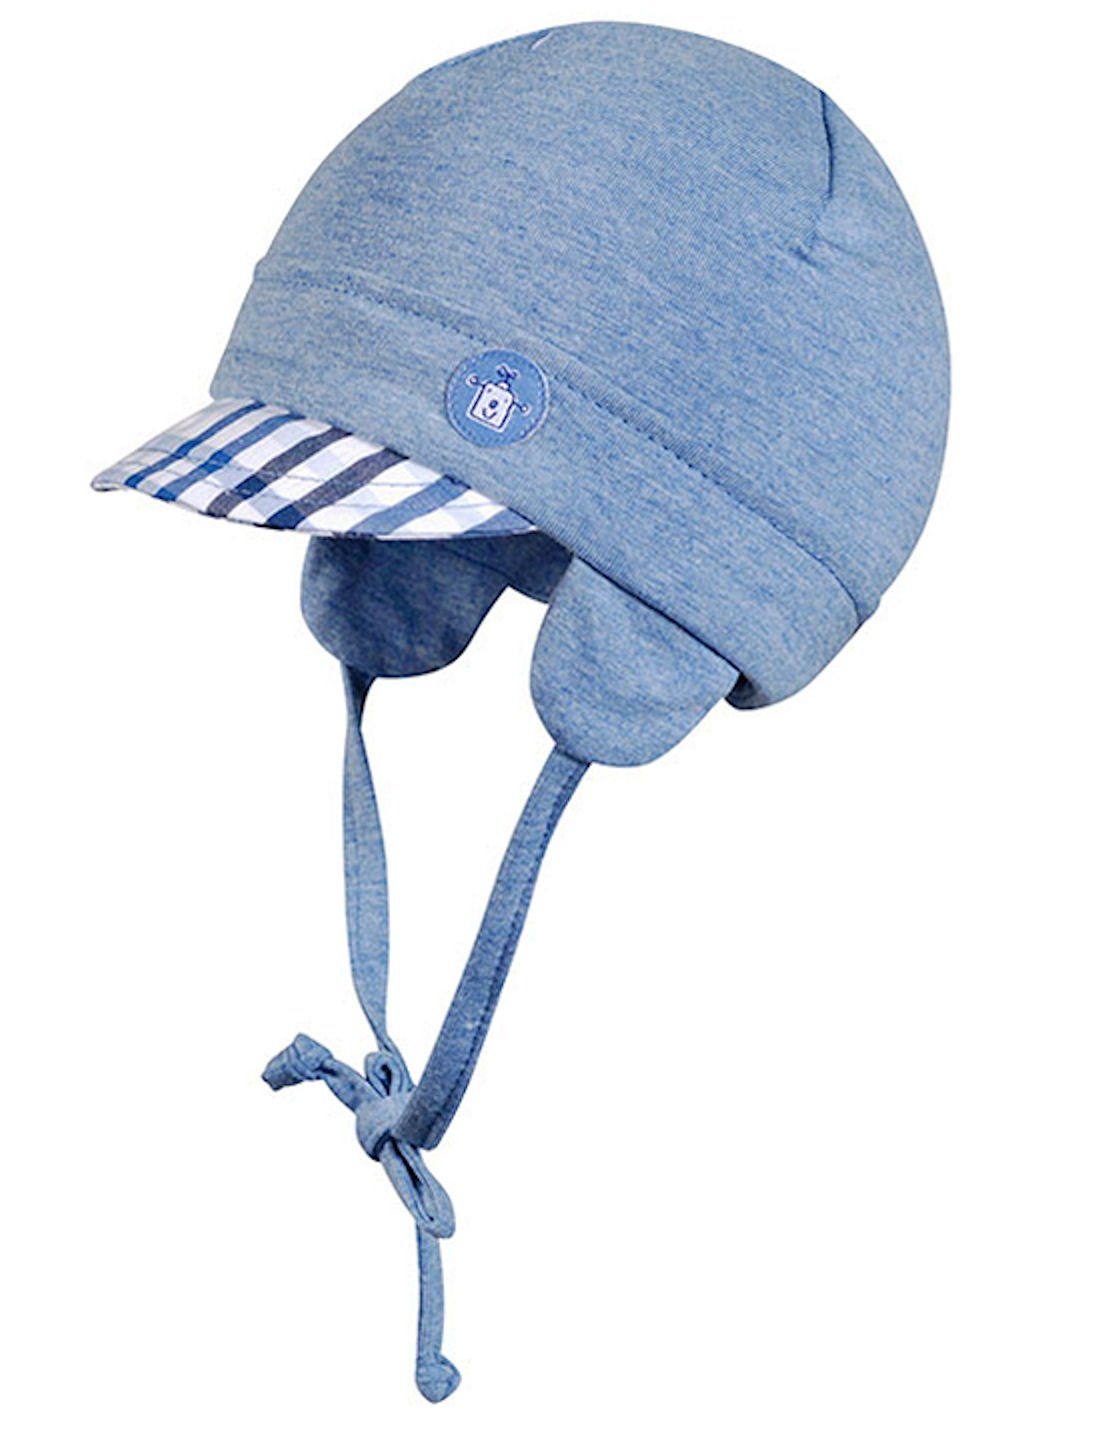 Bindemütze Fiebig jeansblau Ohrenmütze Jungen (Mütze) Mütze Fiebig Schirm mit